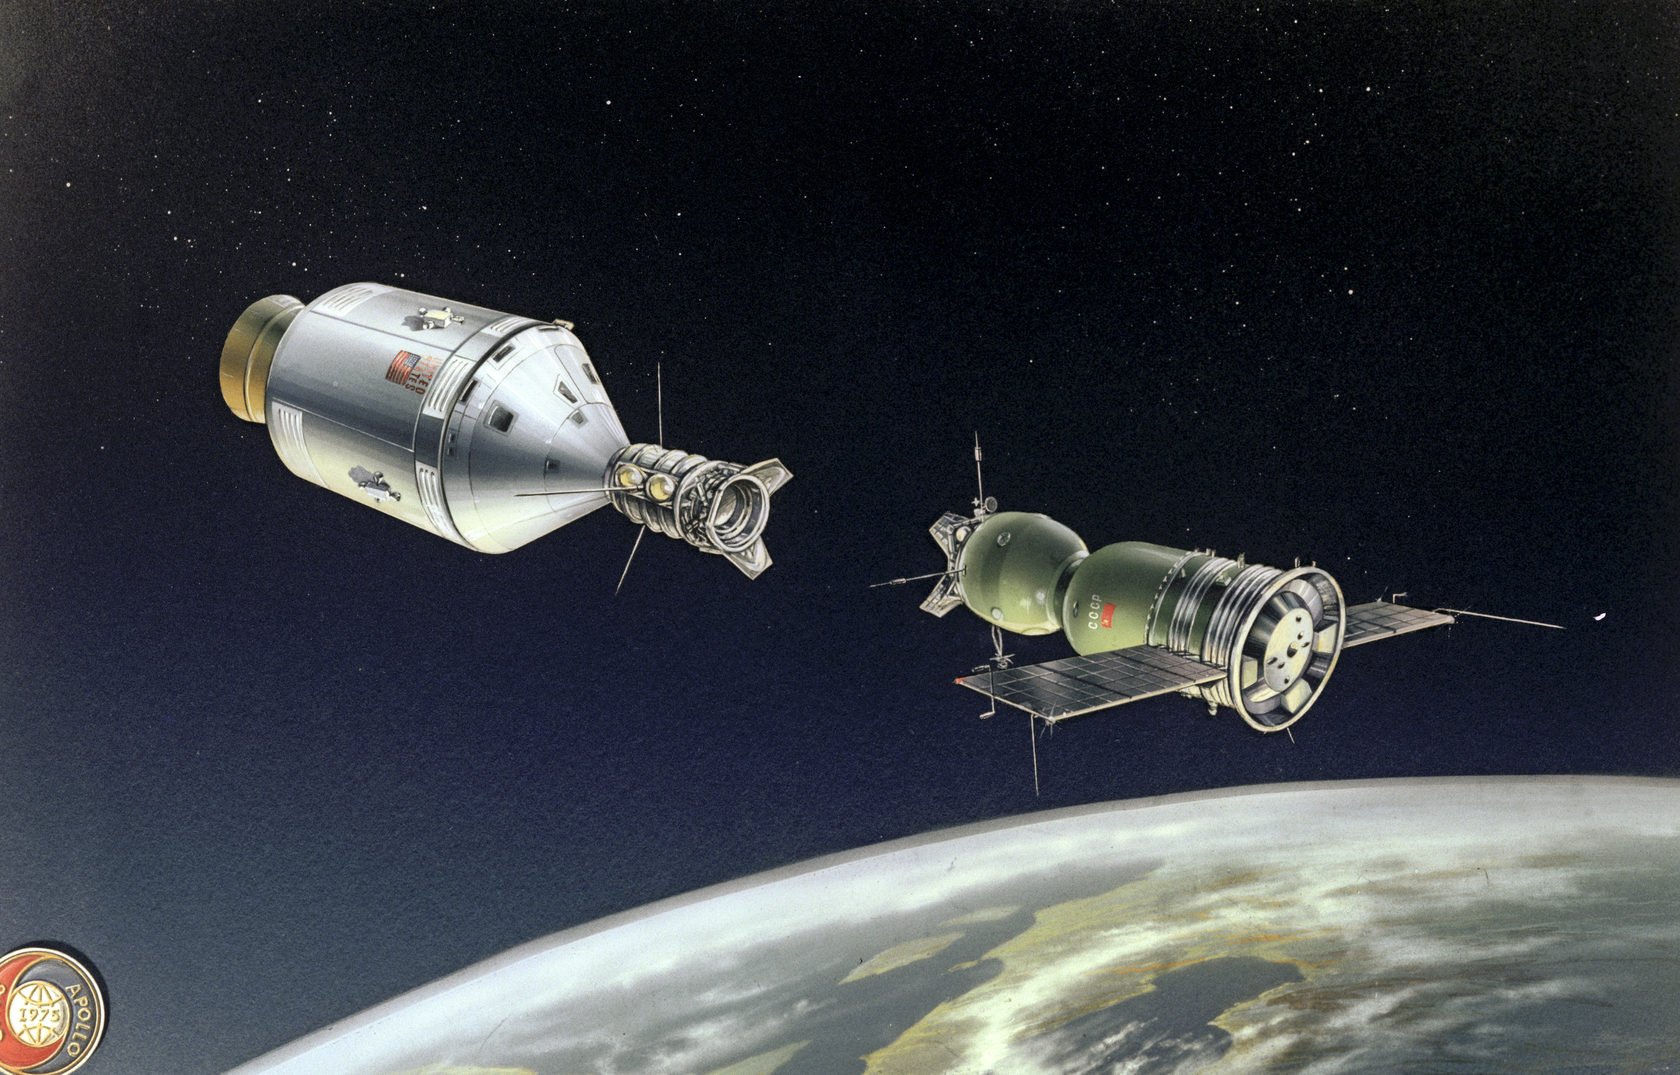 17 июля 1975 года. Союз Аполлон космический корабль. Союз Аполлон 1975. Стыковка космических кораблей Союз и Аполлон. Стыковка космических кораблей Союз 19 и Аполлон.